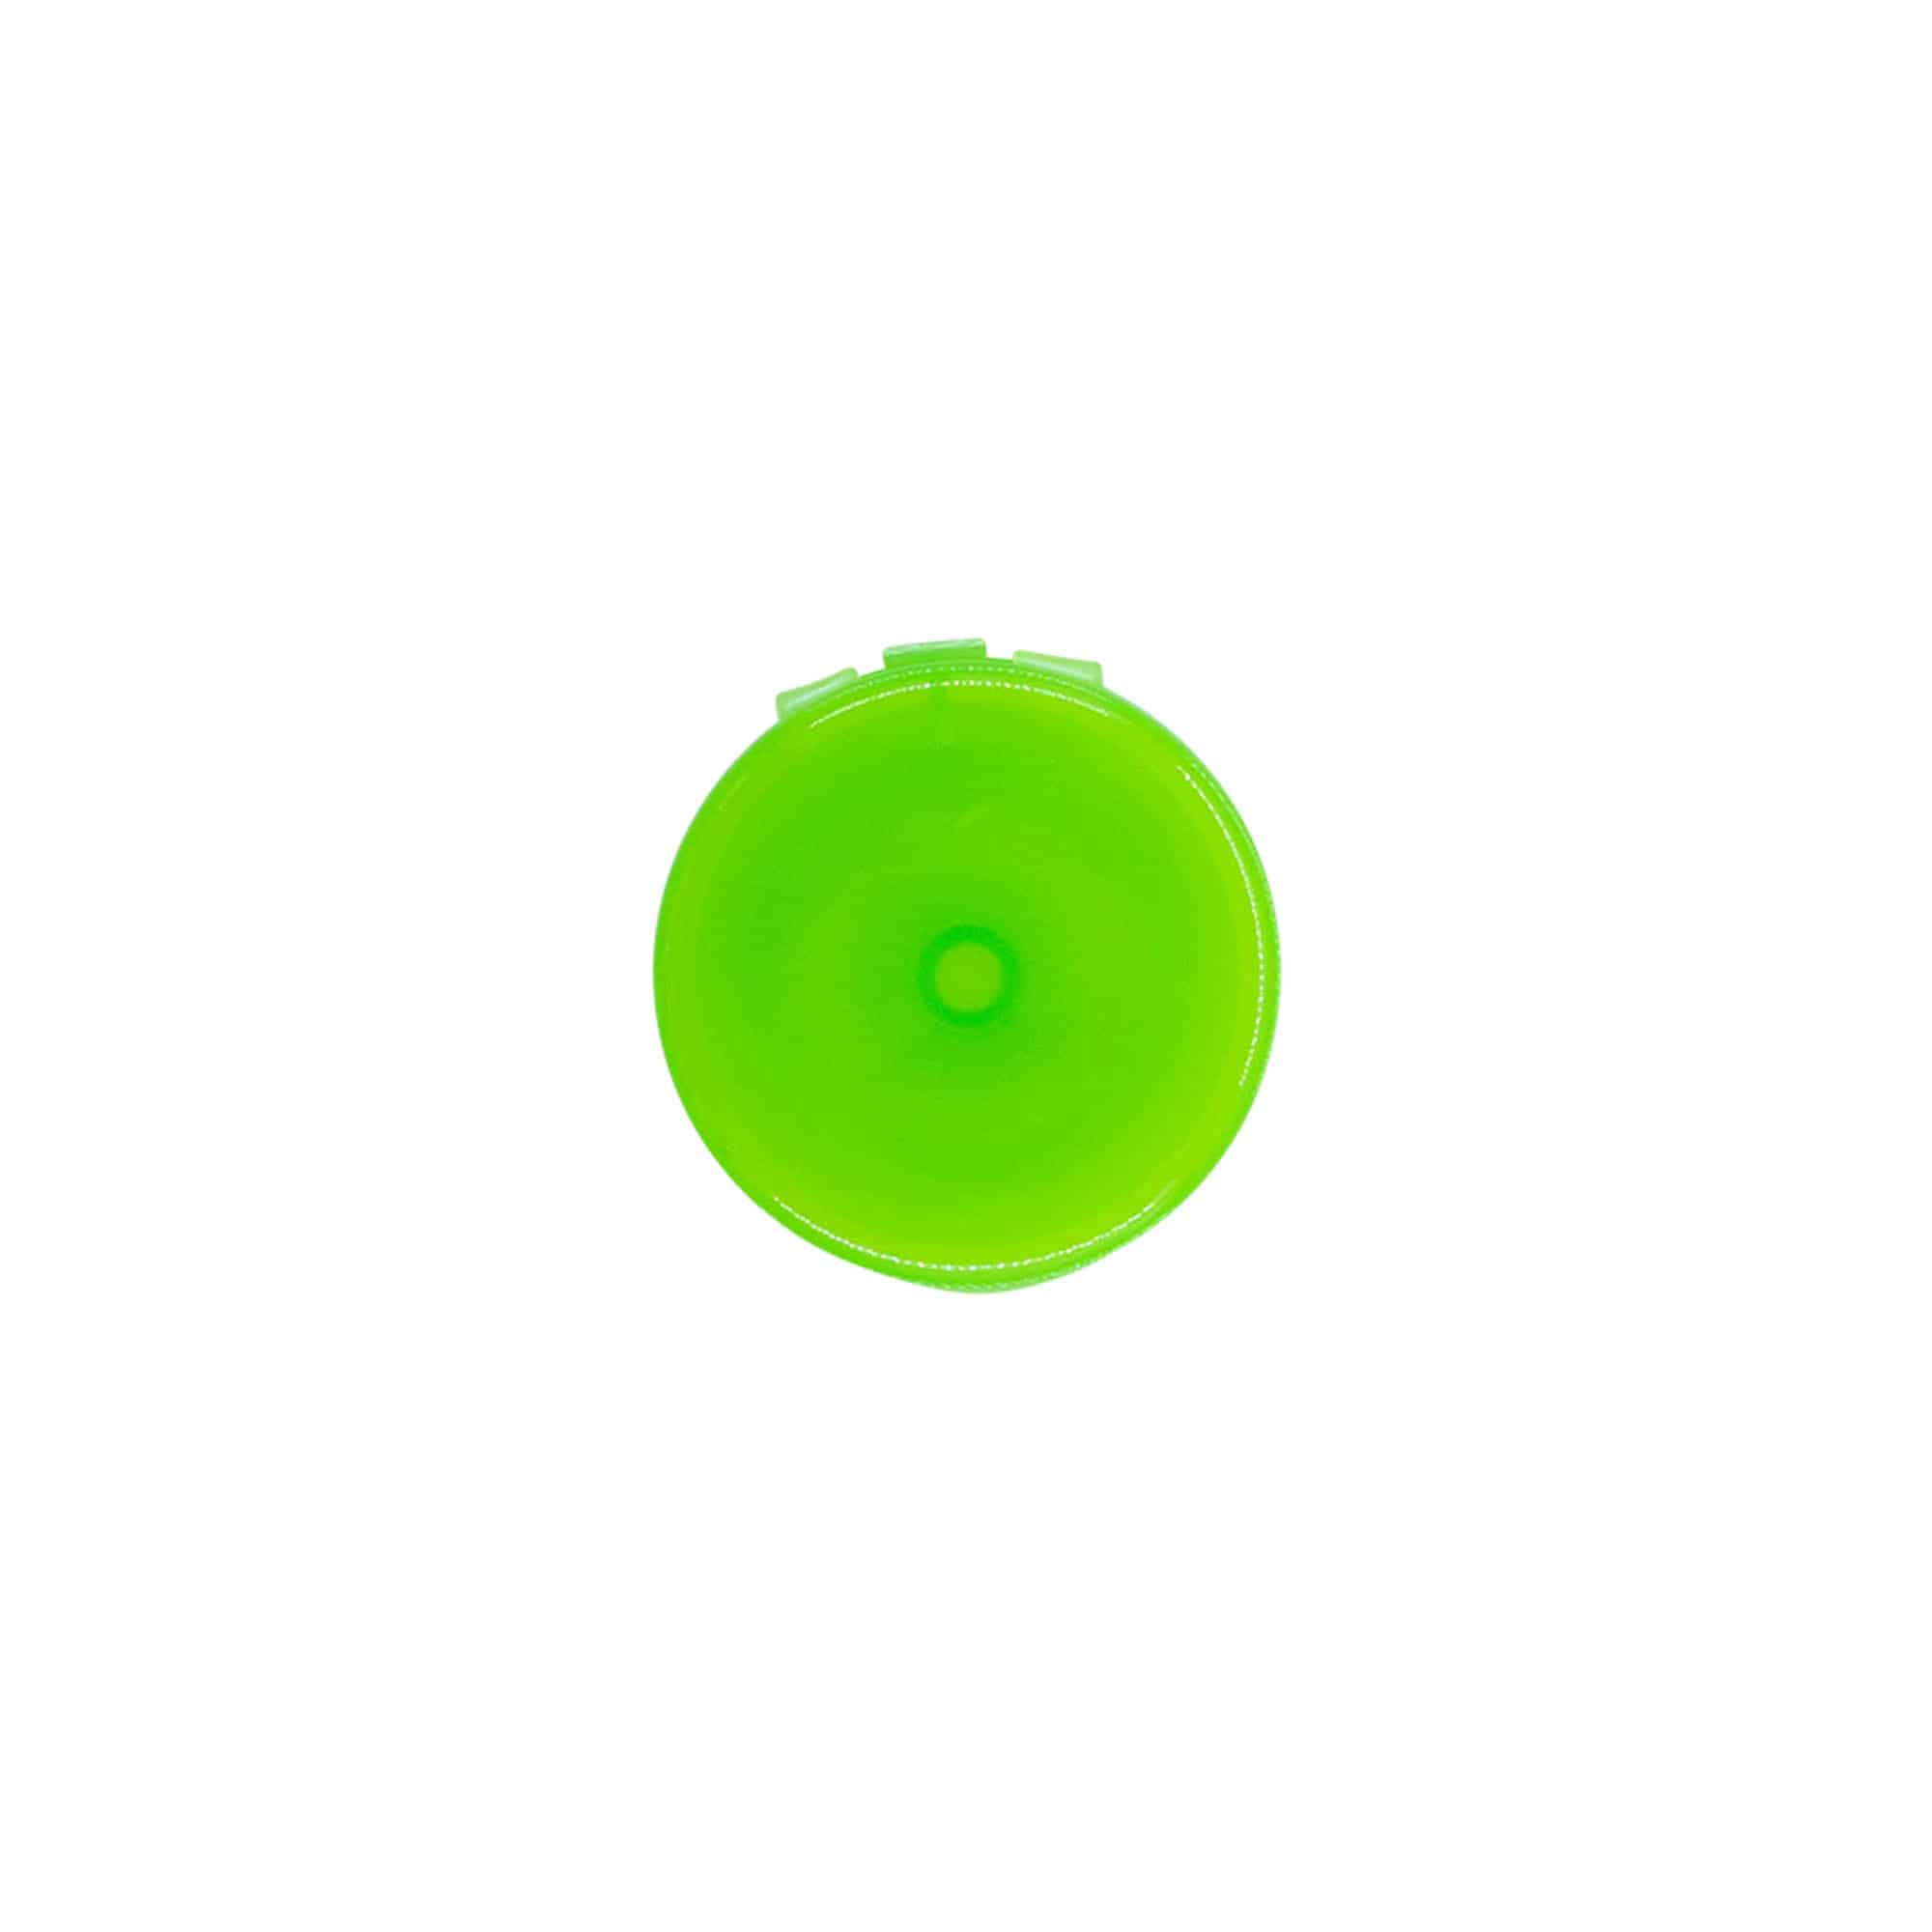 Zakrętka uchylna, tworzywo sztuczne PP, kolor zielony, do zamknięcia: GPI 24/410